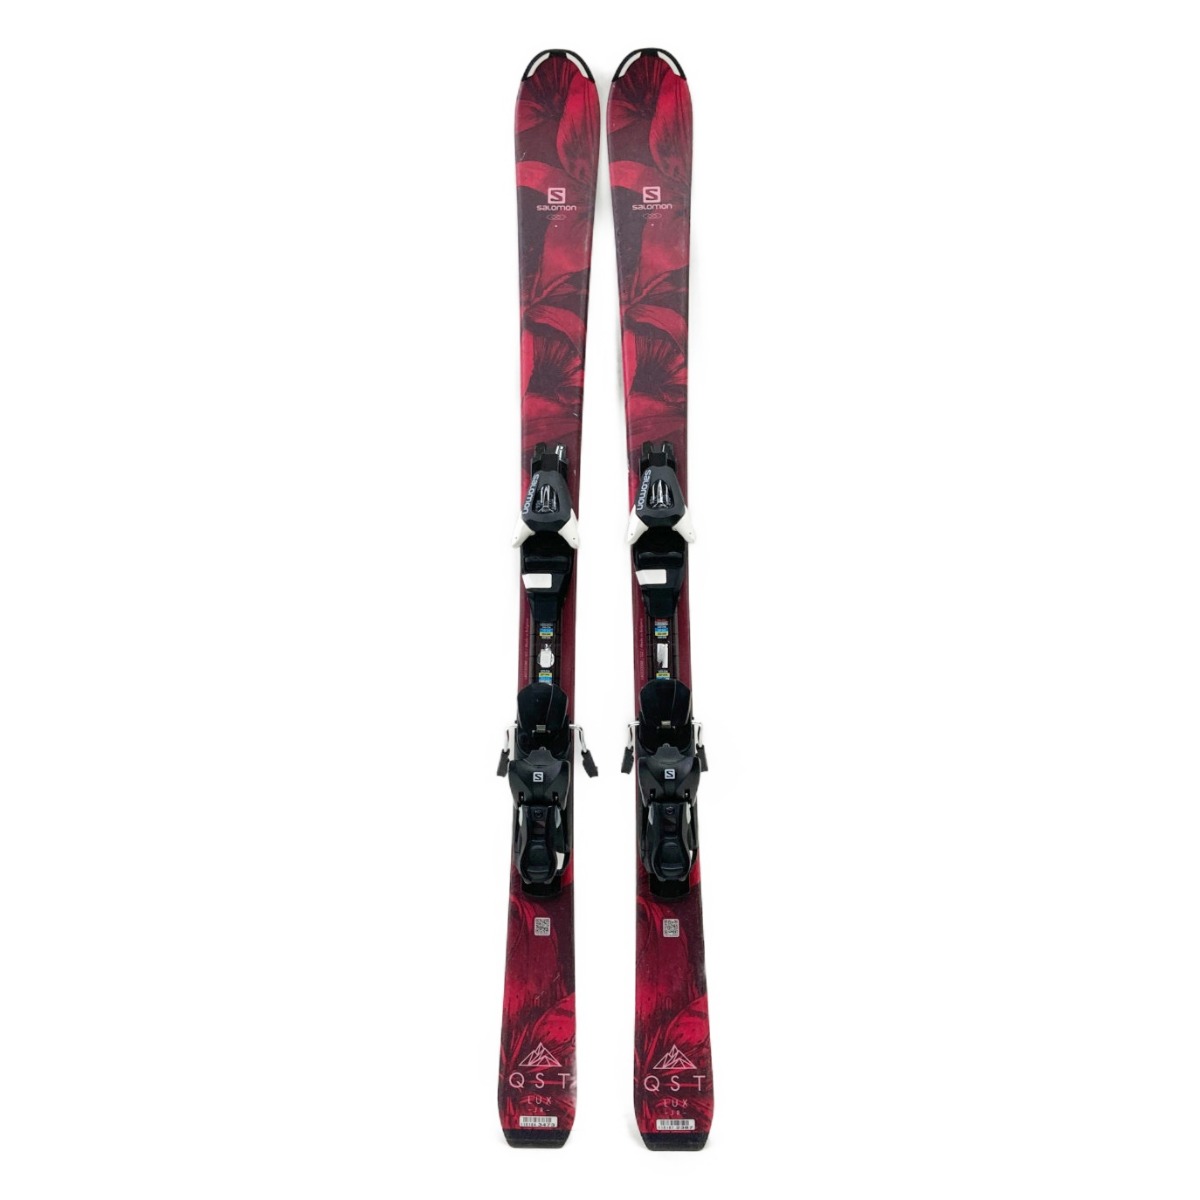 ランキングや新製品 〇〇elan エラン STARR スキー板 130cm ホワイト x